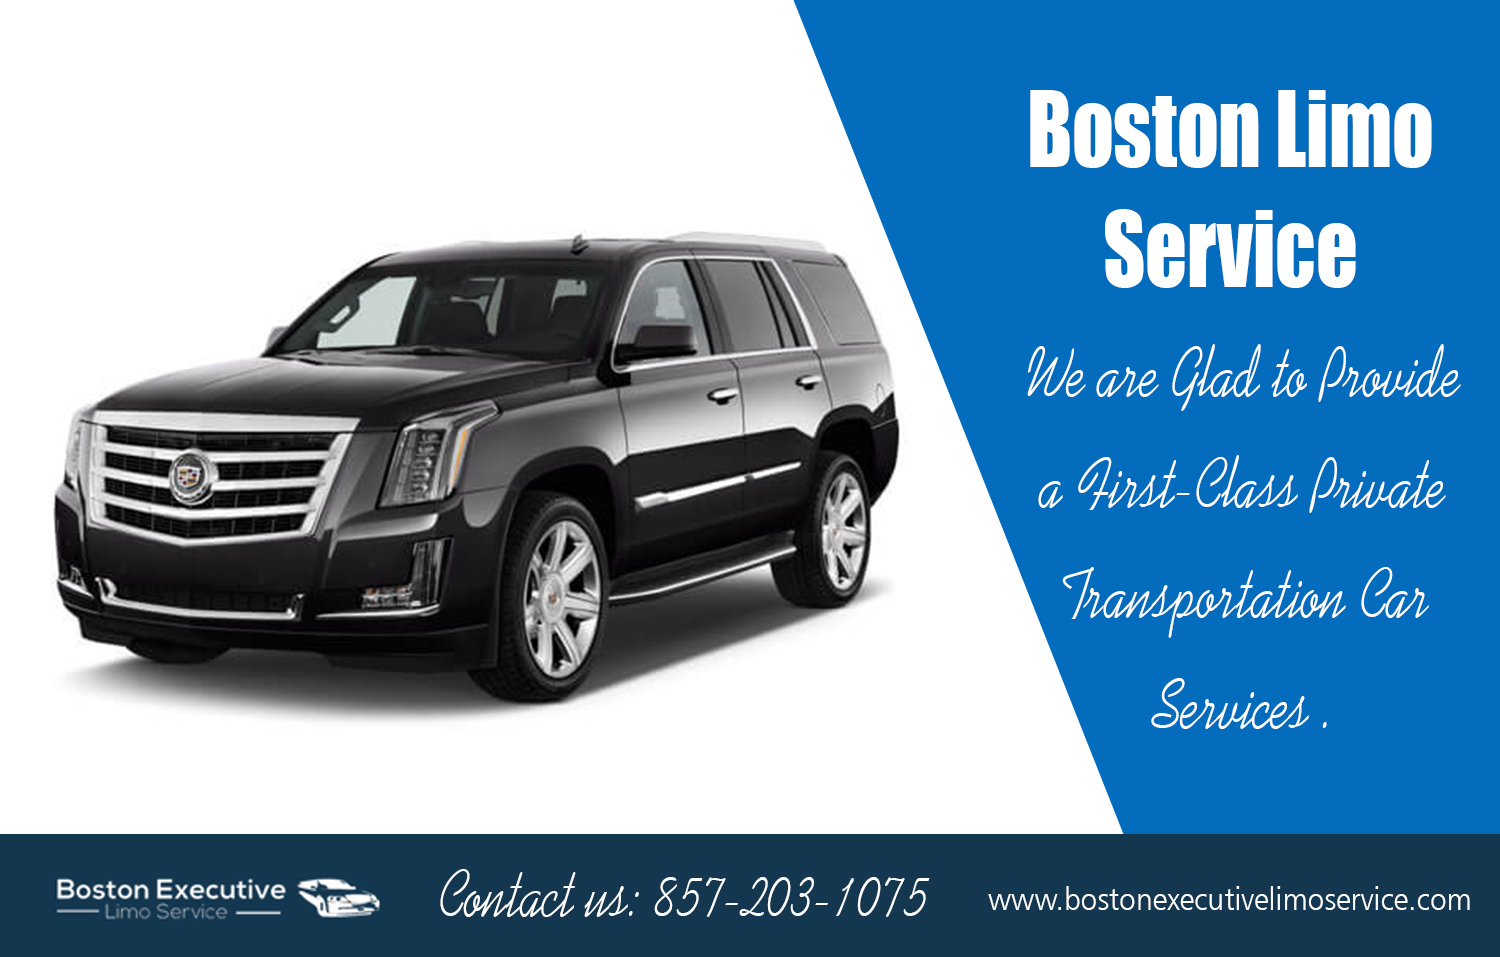 Limo Service Boston | 857-203-1075 | bostonexecutivelimoservice.com